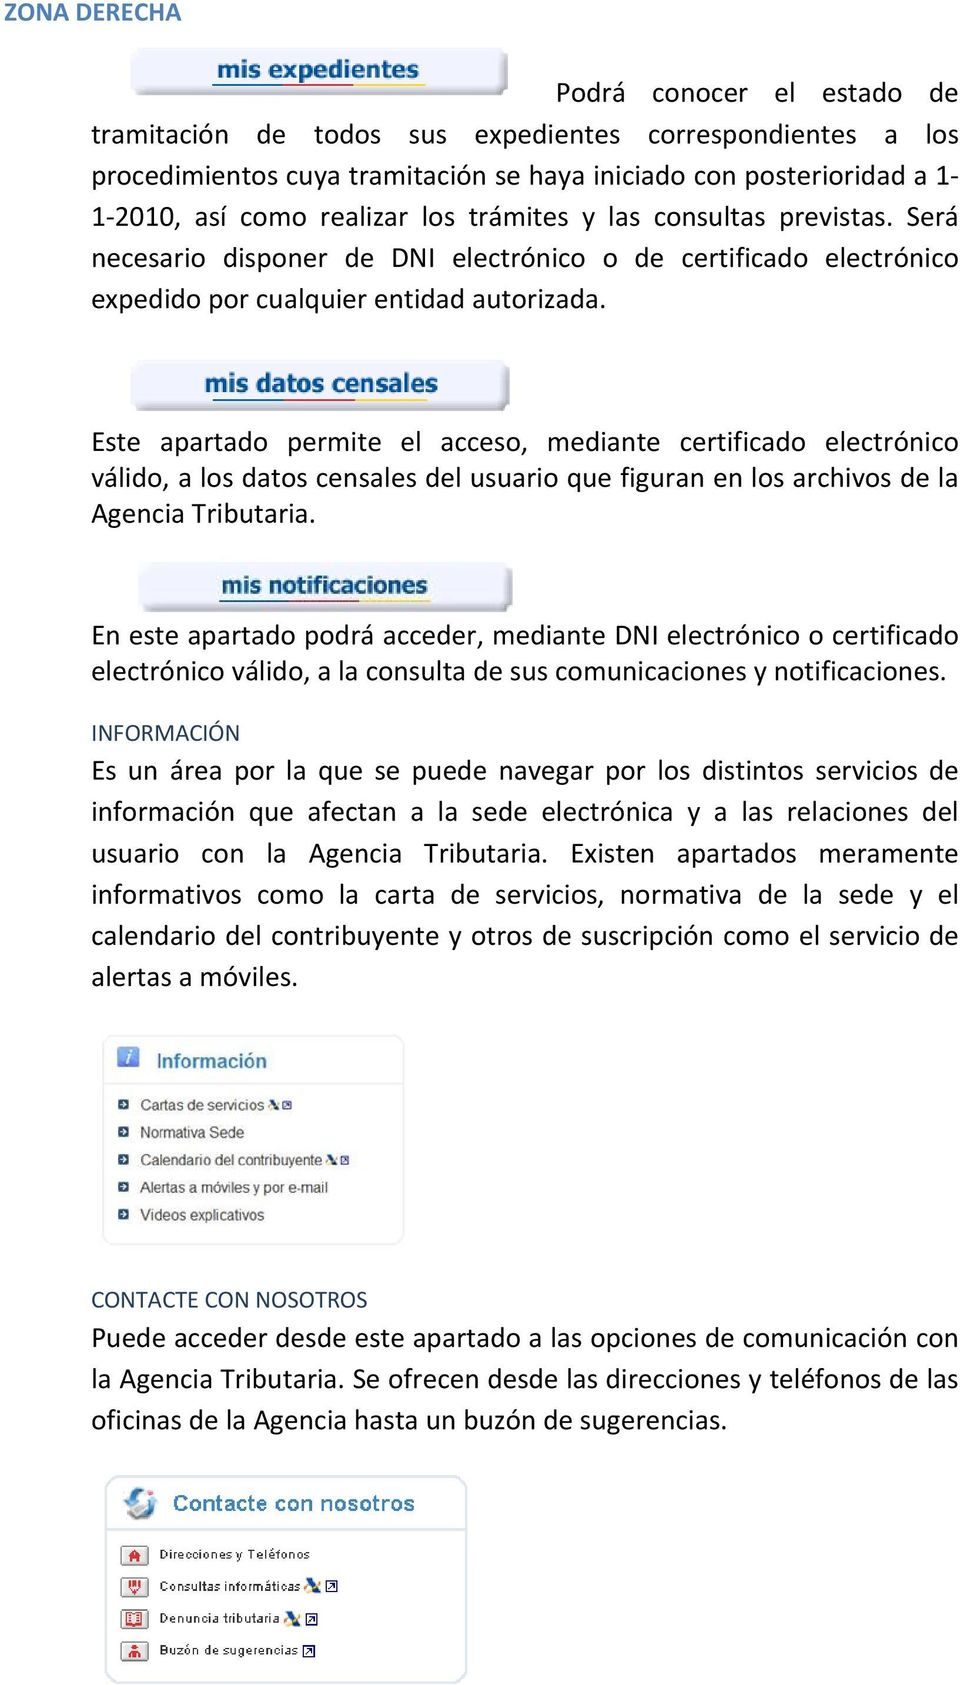 Este apartado permite el acceso, mediante certificado electrónico válido, a los datos censales del usuario que figuran en los archivos de la Agencia Tributaria.